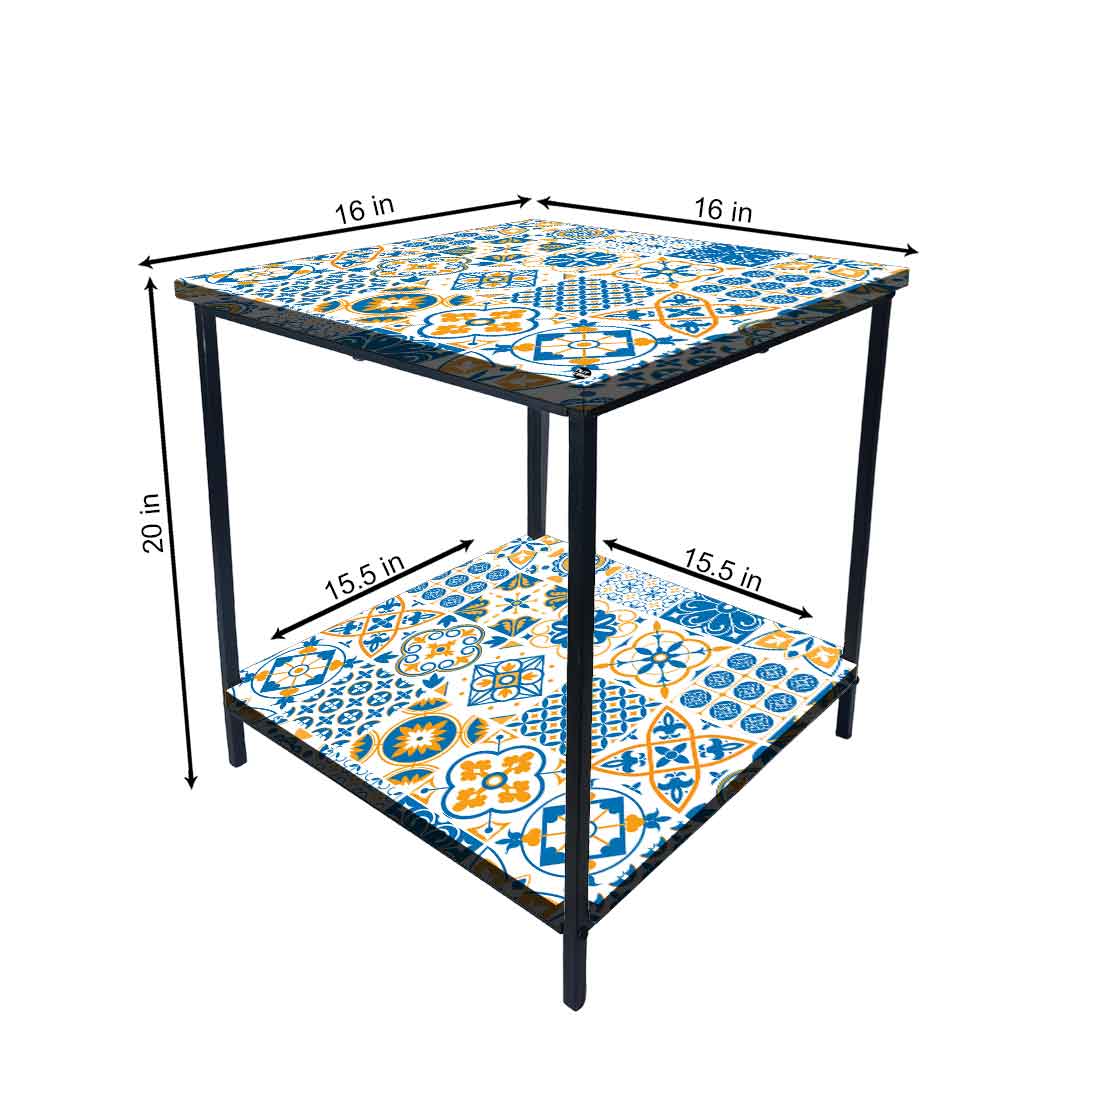 Designer Bedside Table for End Tables for Bedroom - Traditional Spanish Tiles Nutcase